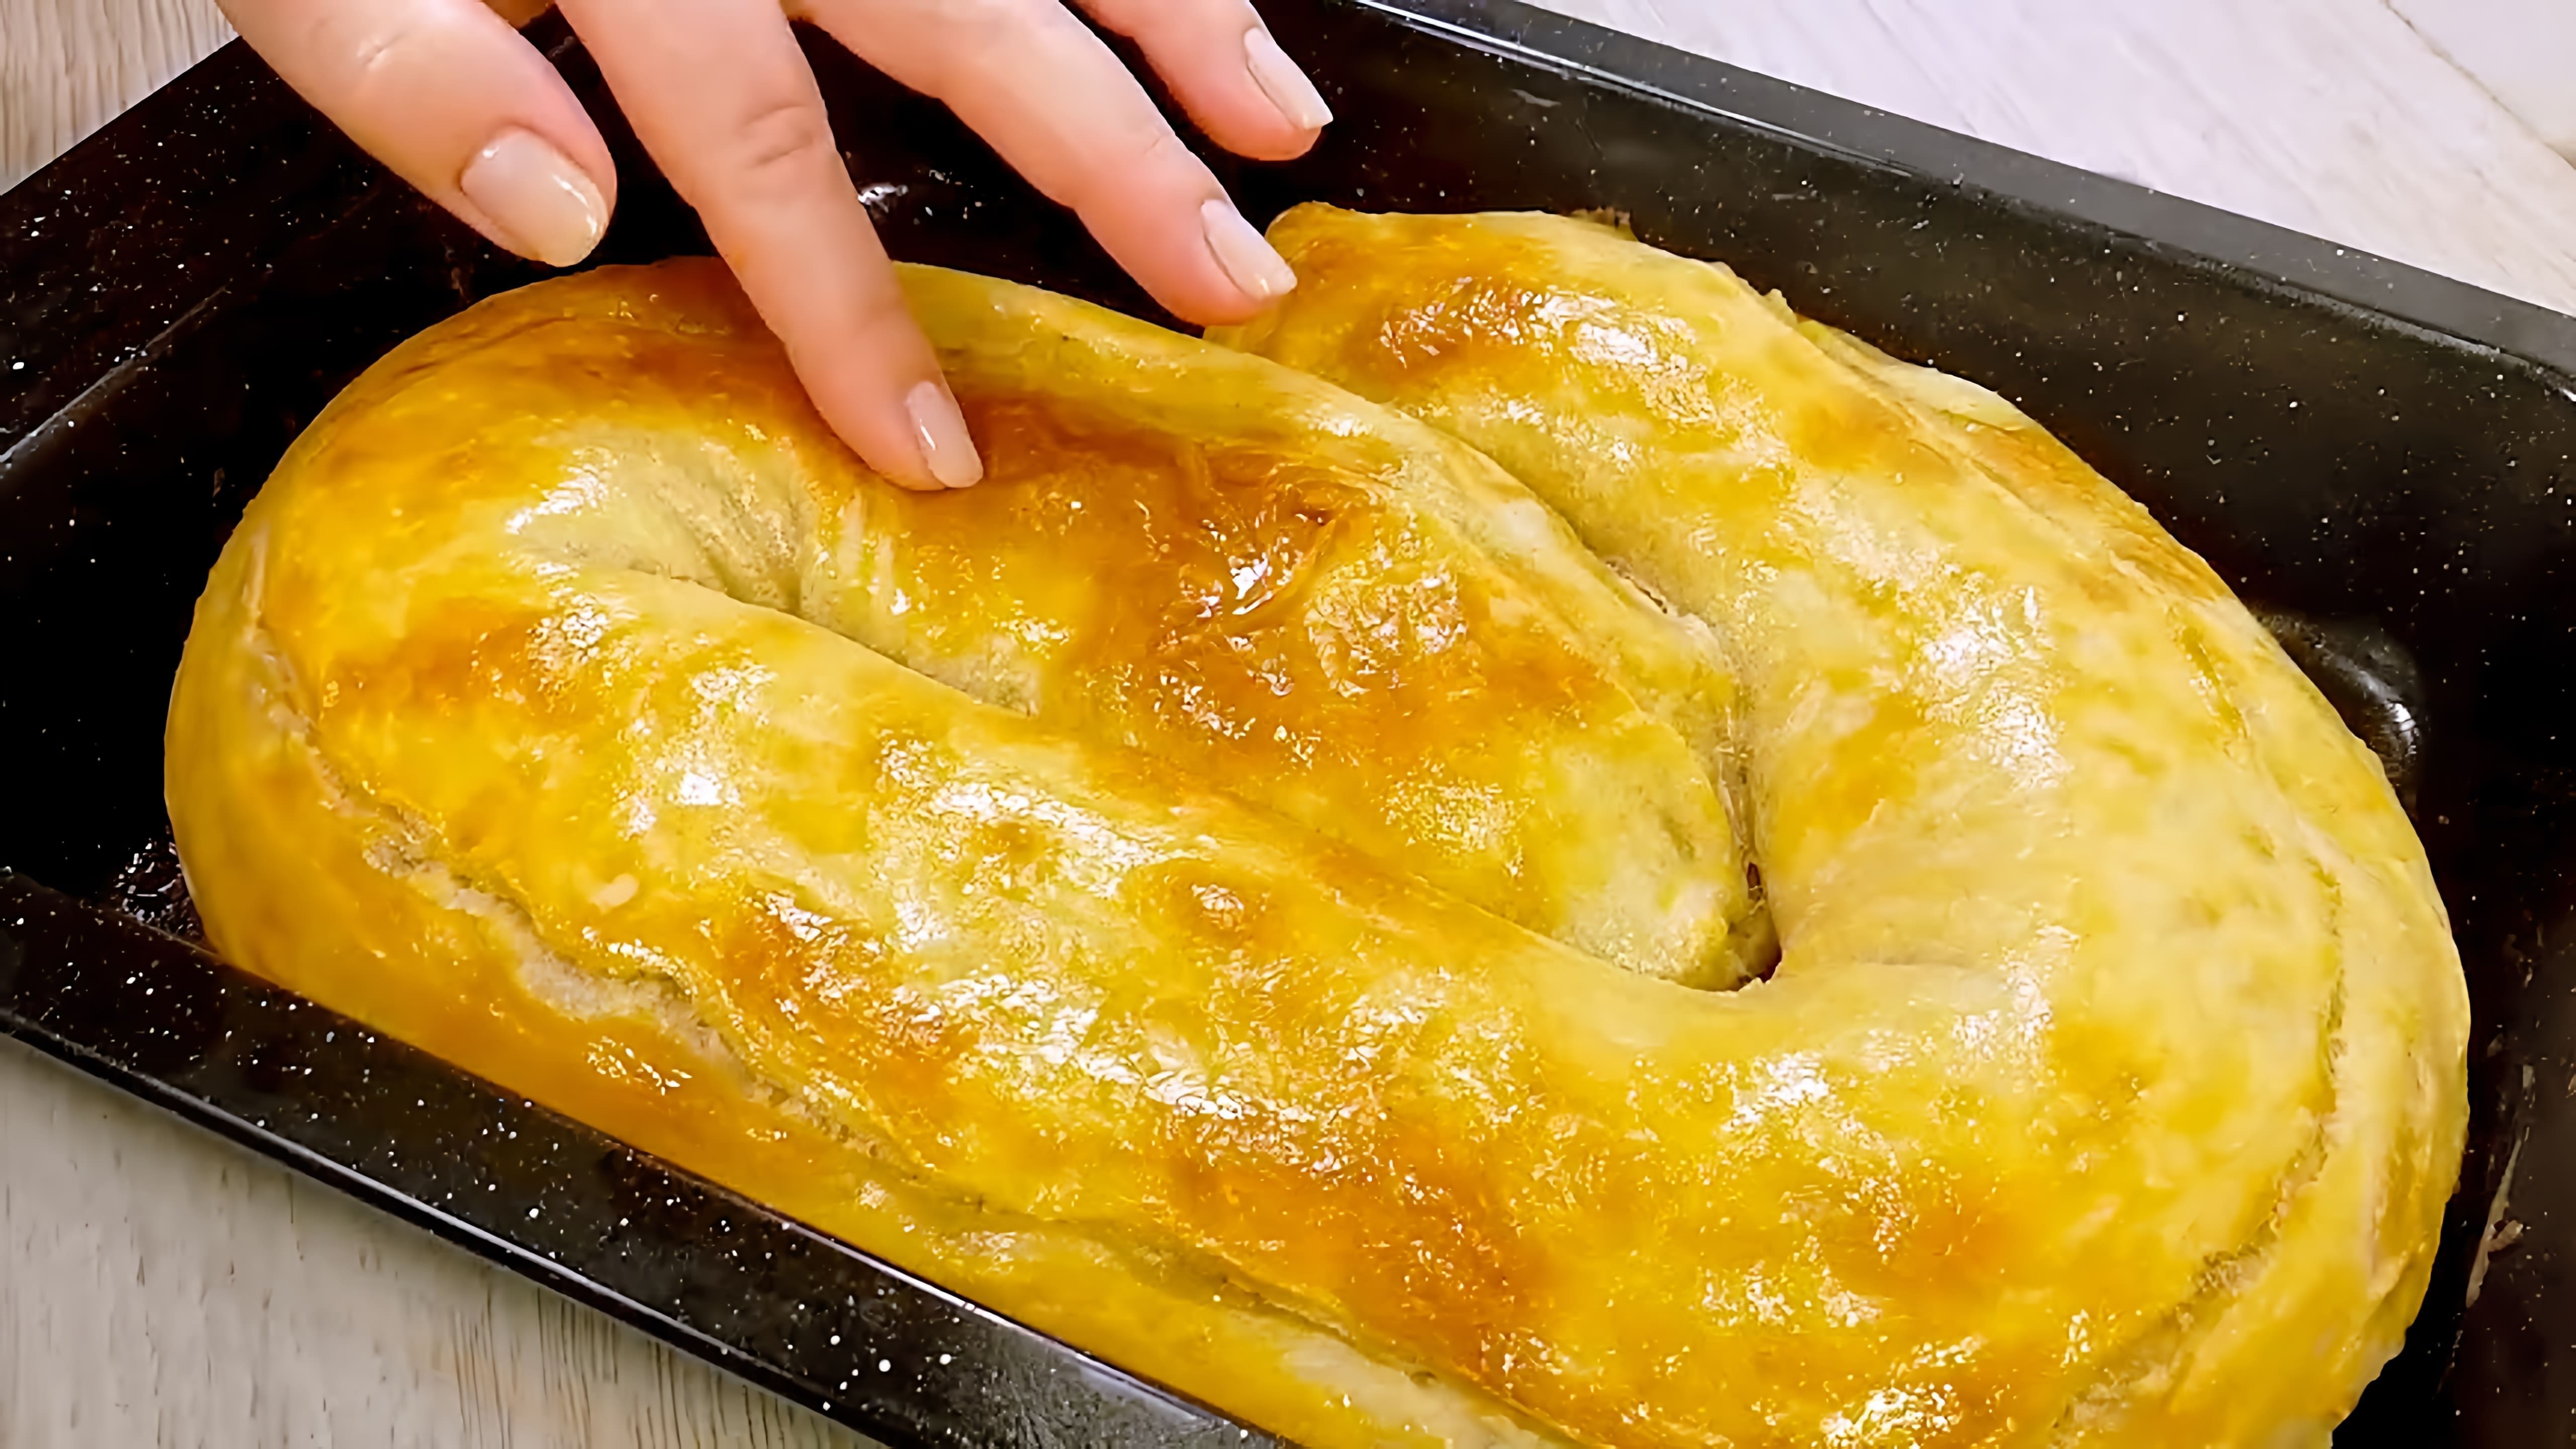 В этом видео демонстрируется процесс приготовления вкусного и простого блюда - картофельного ханома